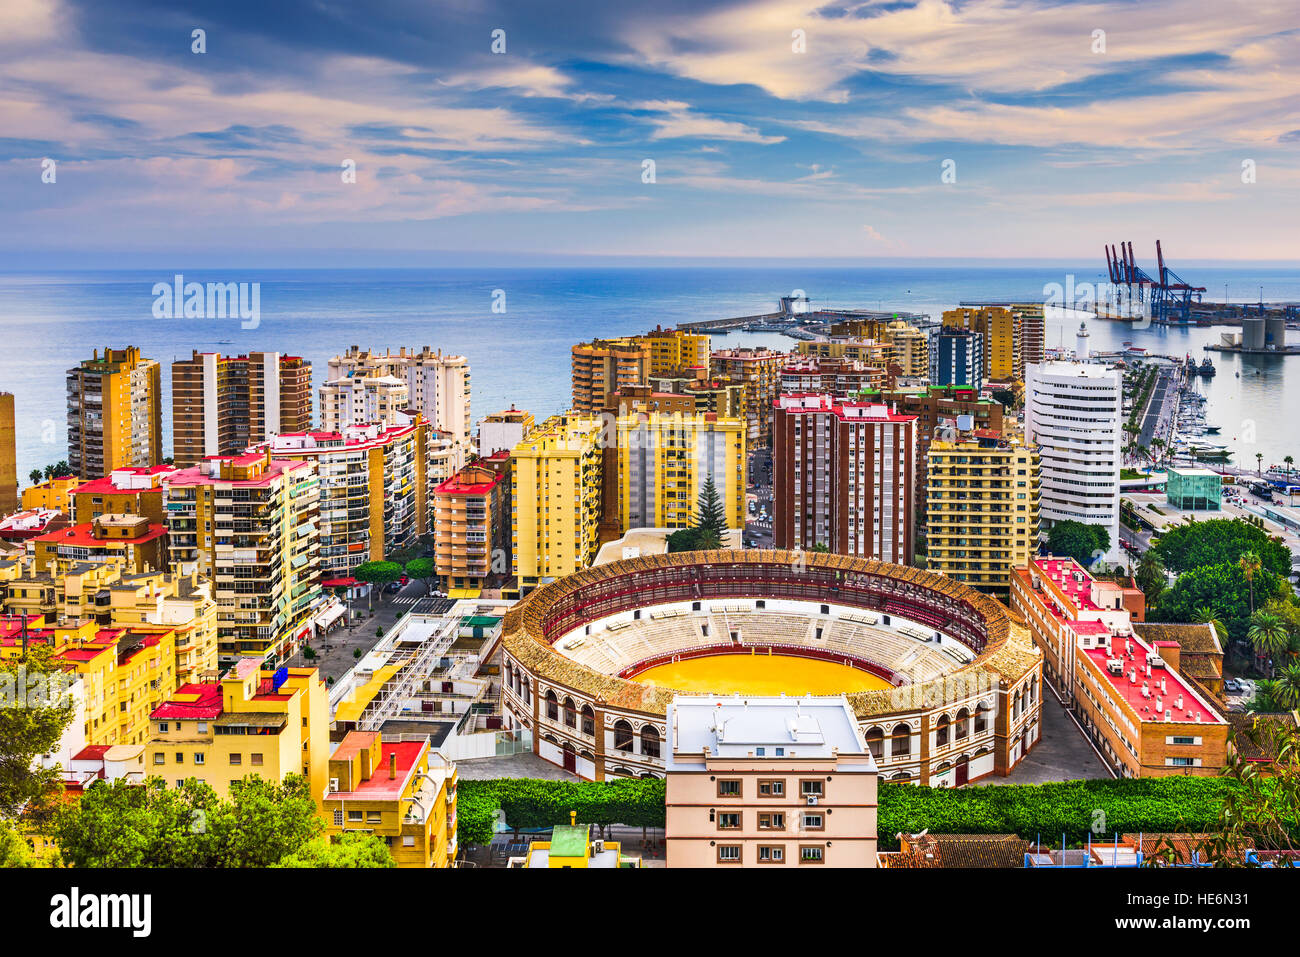 Malaga, Espagne skyline vers la mer Méditerranée. Banque D'Images